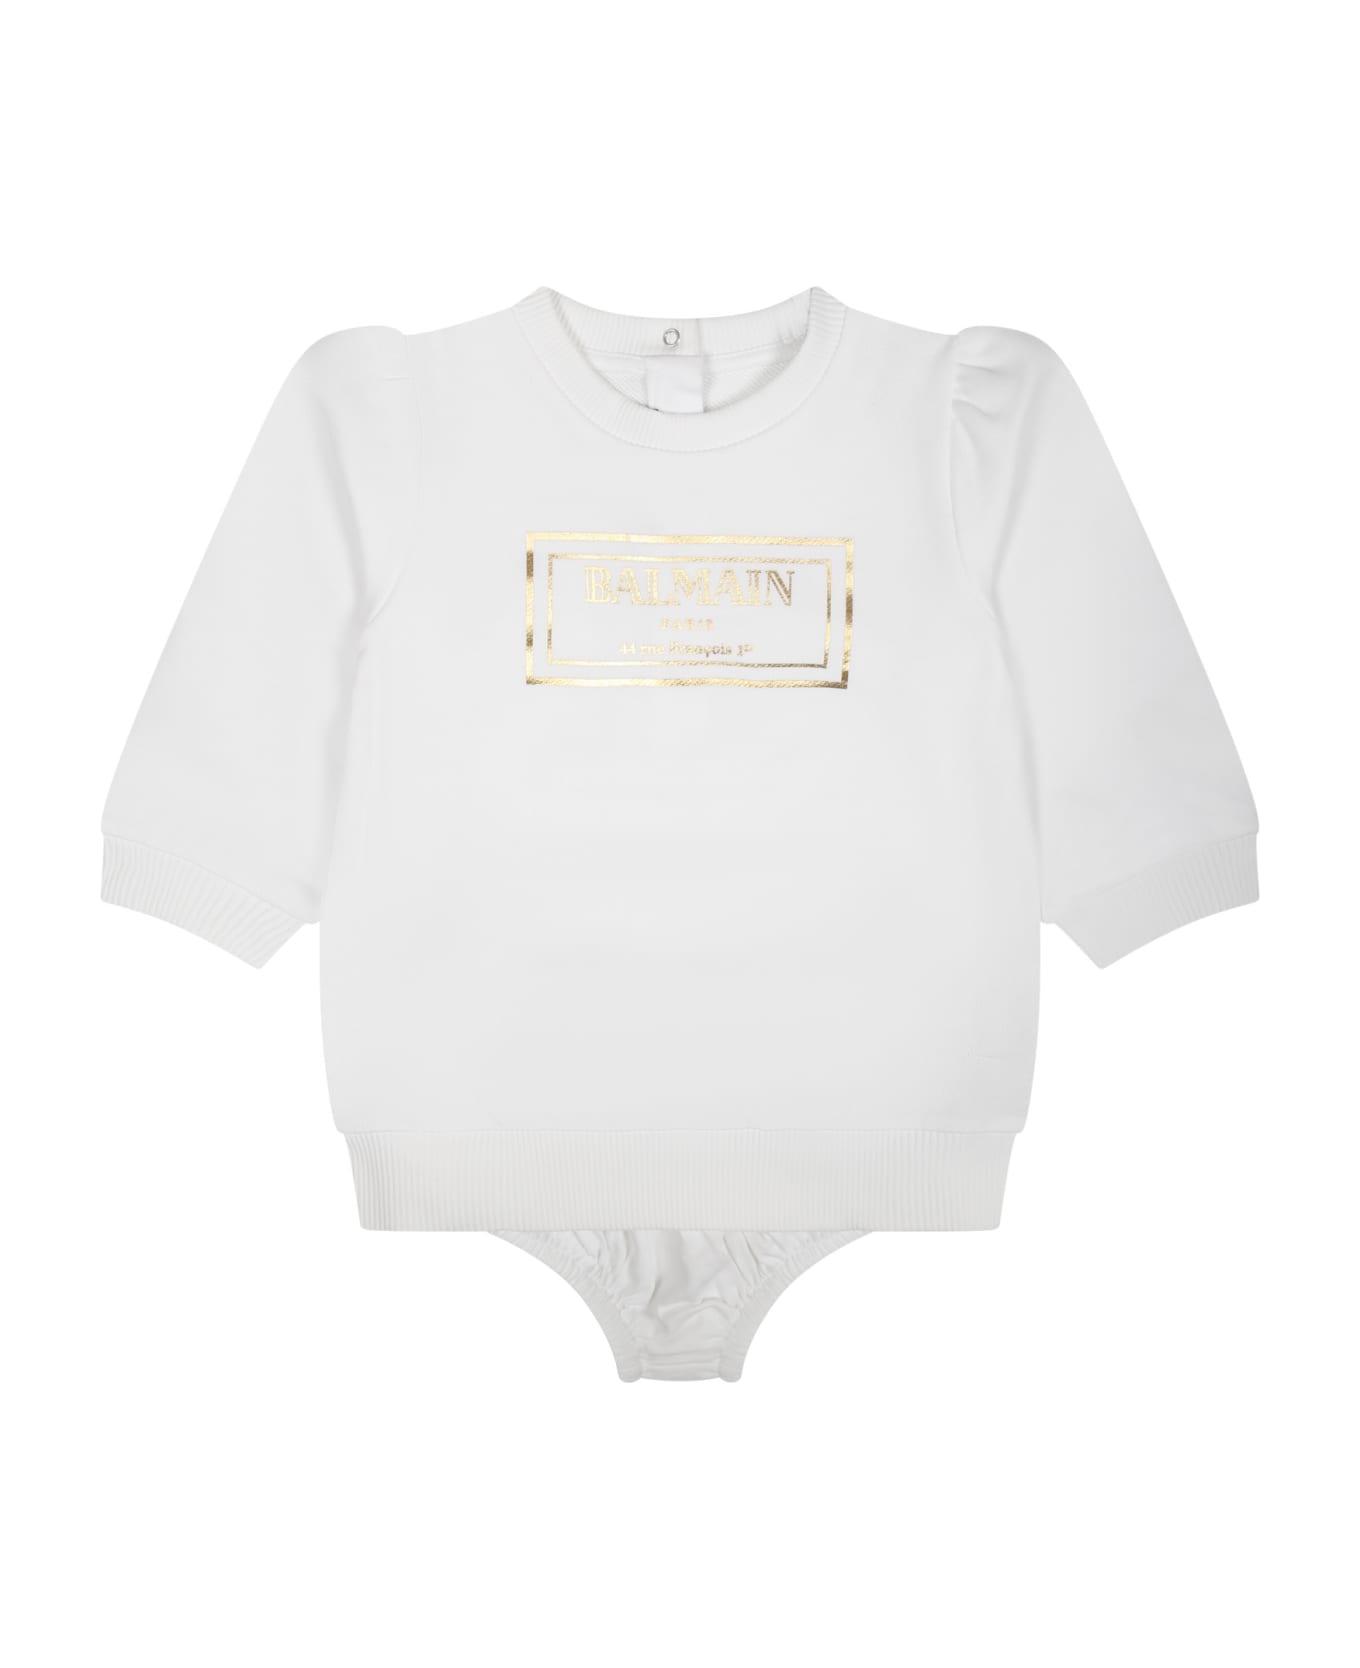 Balmain White Dress For Baby Girl With Logo - White ウェア